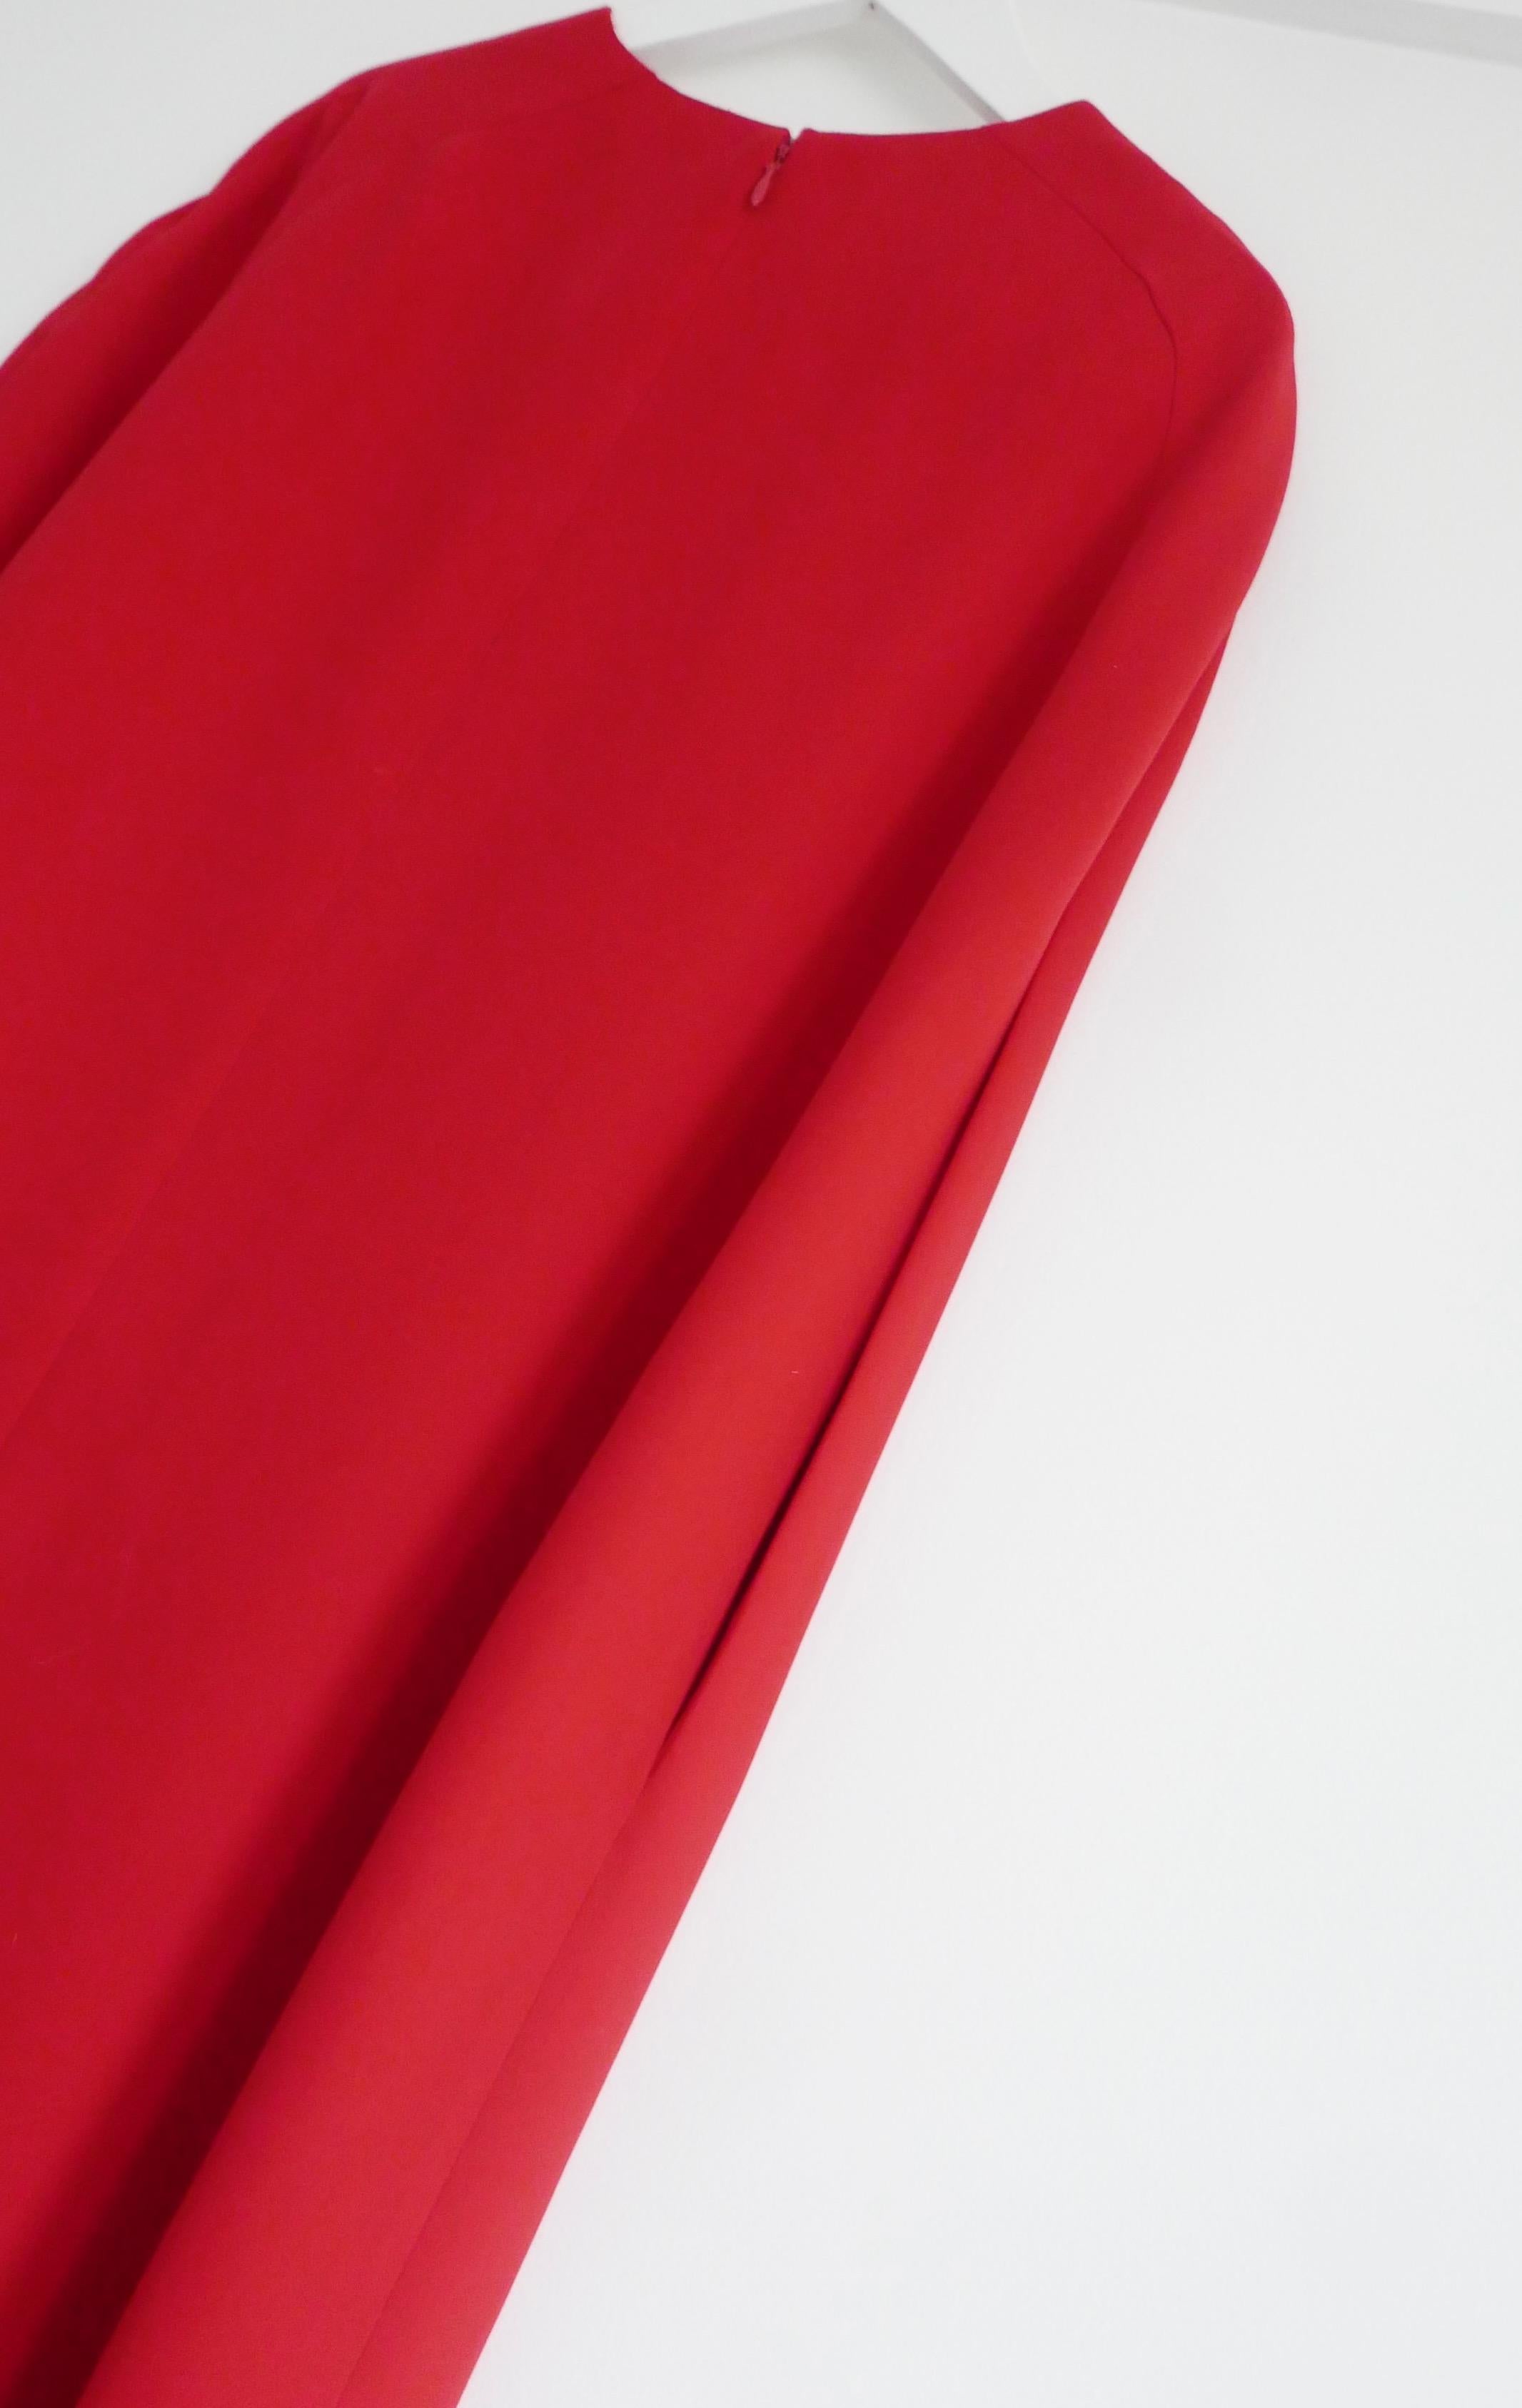 Robe cape rouge iconique Valentino issue de la collection Pre-Fall 2014. Il a été récemment nettoyé à sec. Confectionnée en crêpe de soie rouge Valentino, signature de la griffe, elle présente une coupe minimaliste inspirée d'une cape, avec des